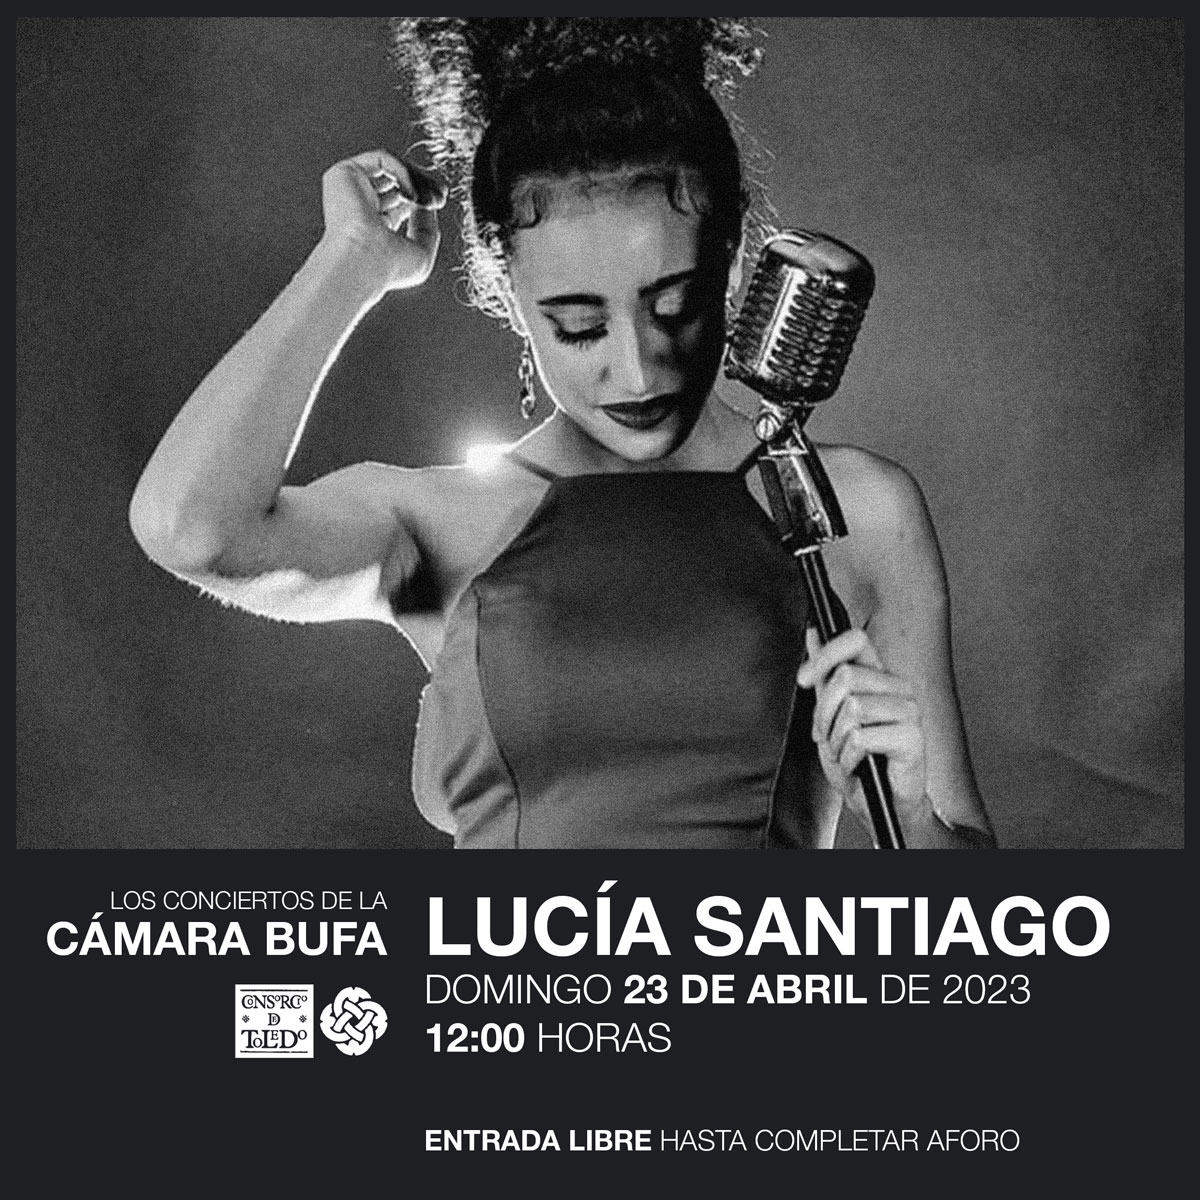 Concierto Lucia Santiago en Cámara Bufa